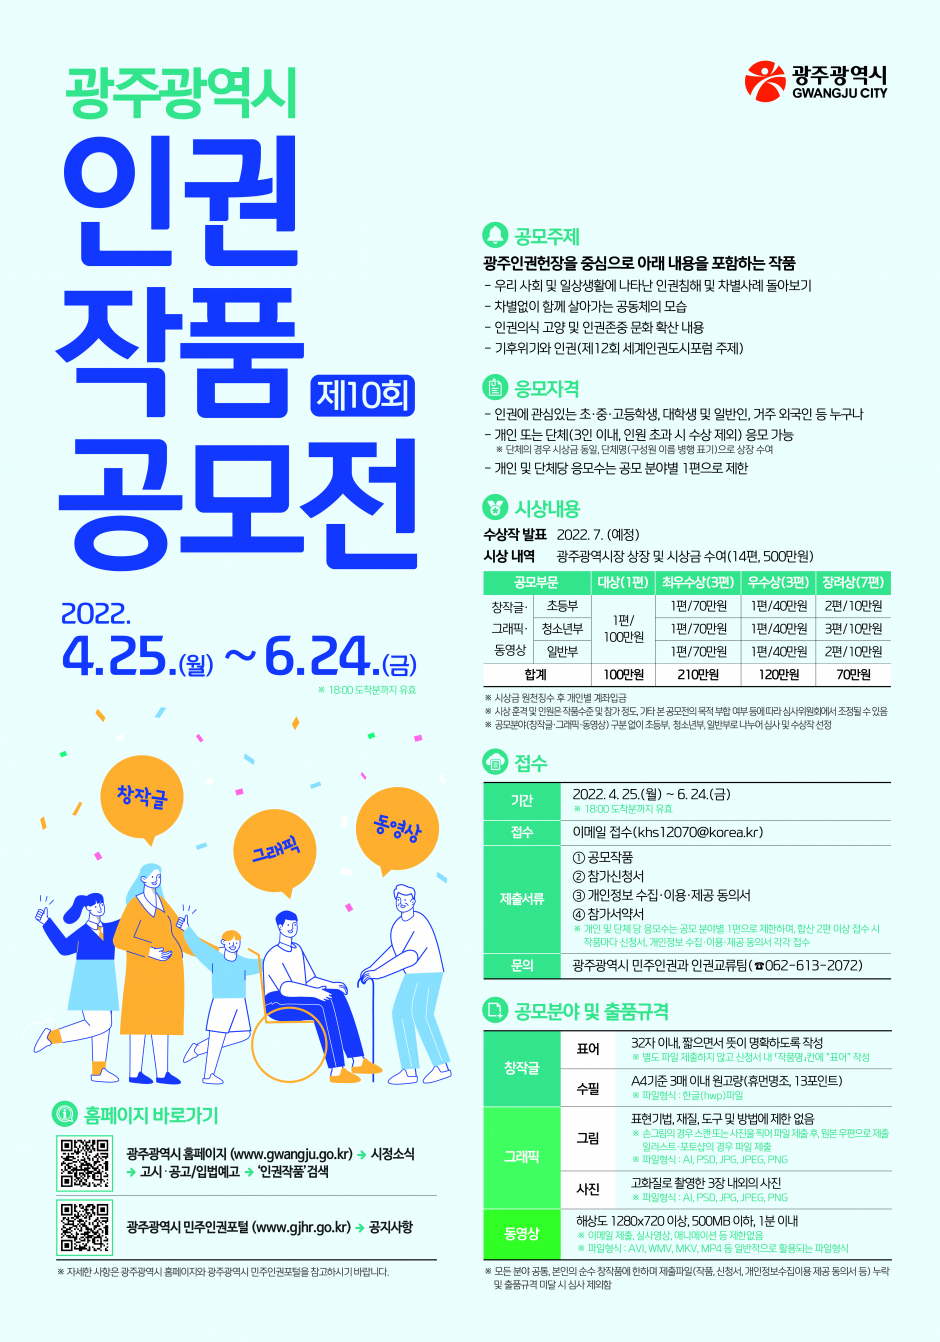 제10회 광주광역시 인권작품 공모전 홍보 및 참여 협조